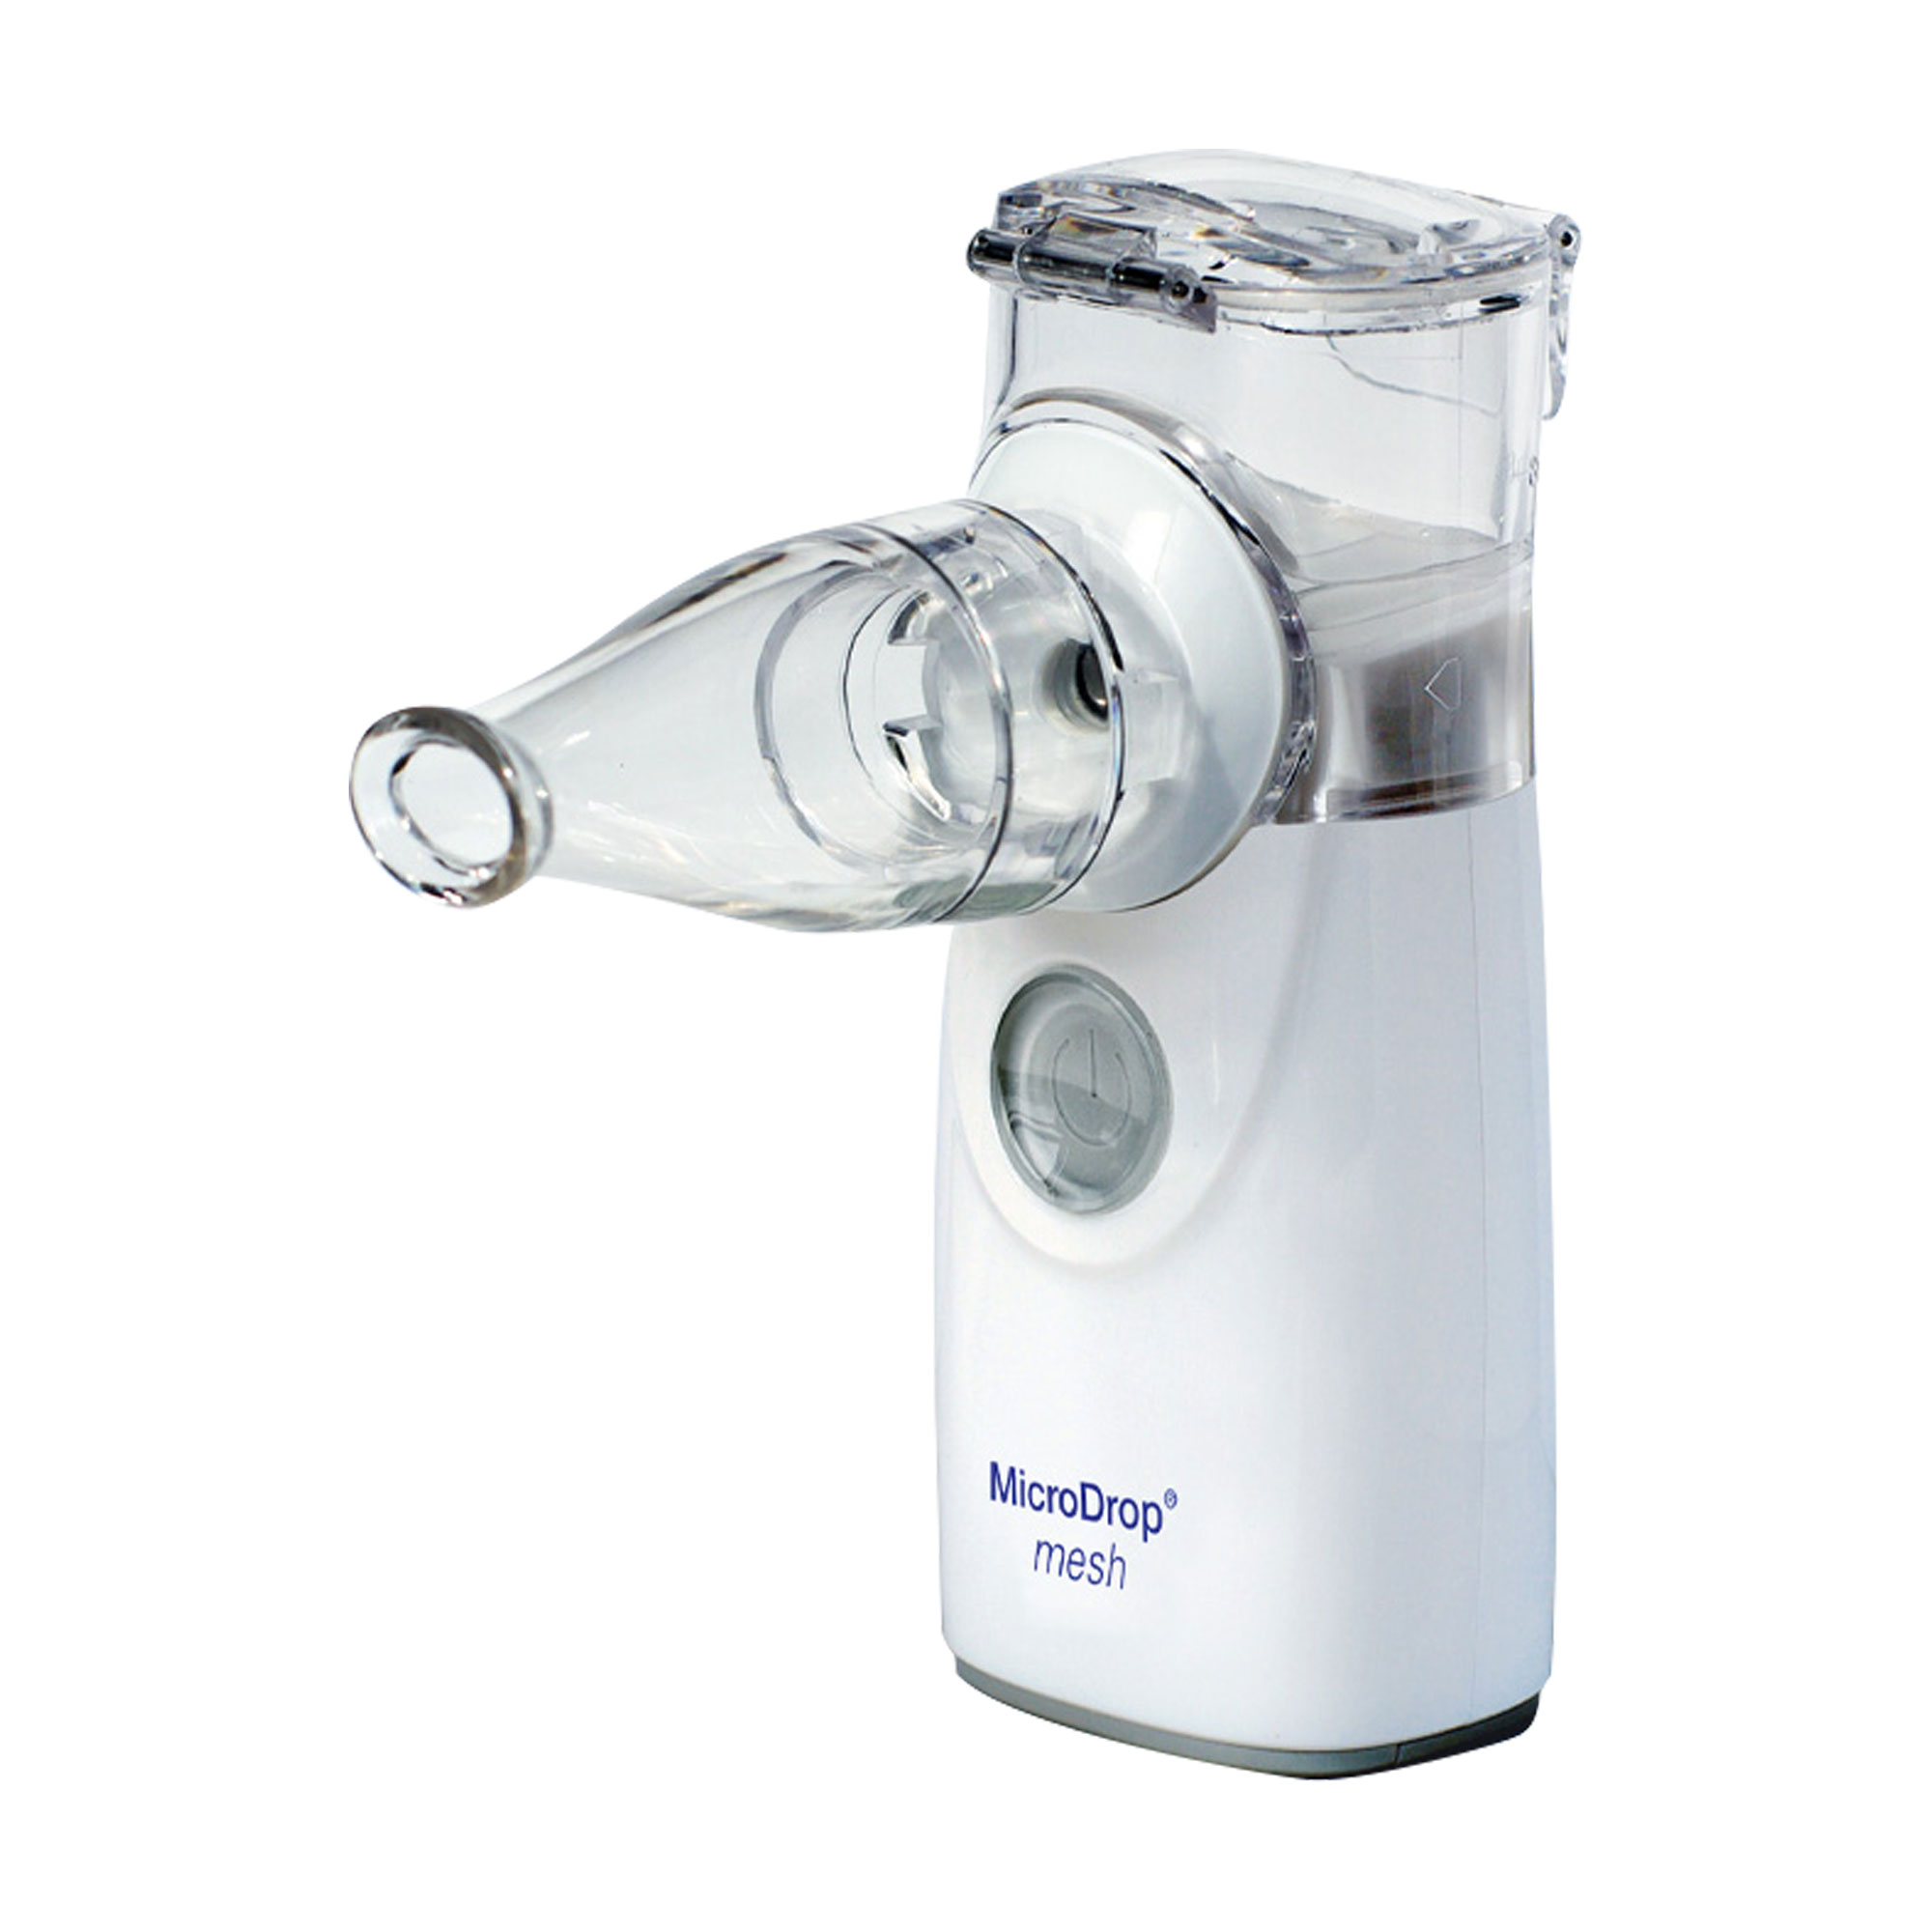 Mobiles Inhalationsgerät für die unteren Atemwege. Auch für Babys und Kinder geeignet.